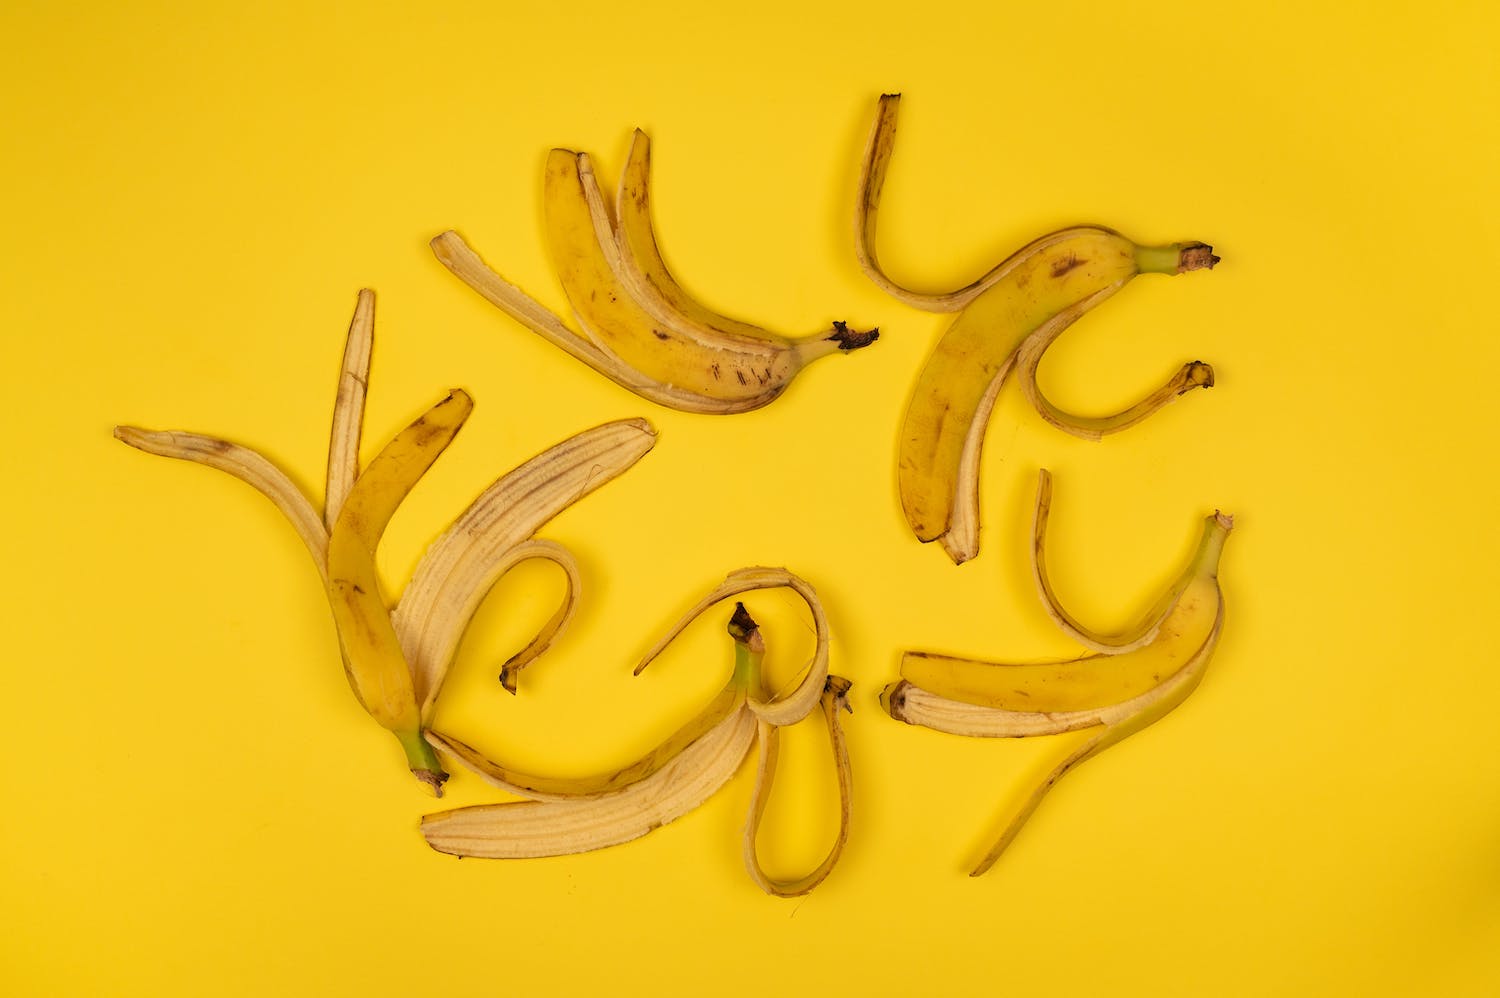 buccia-banana-decomposizione